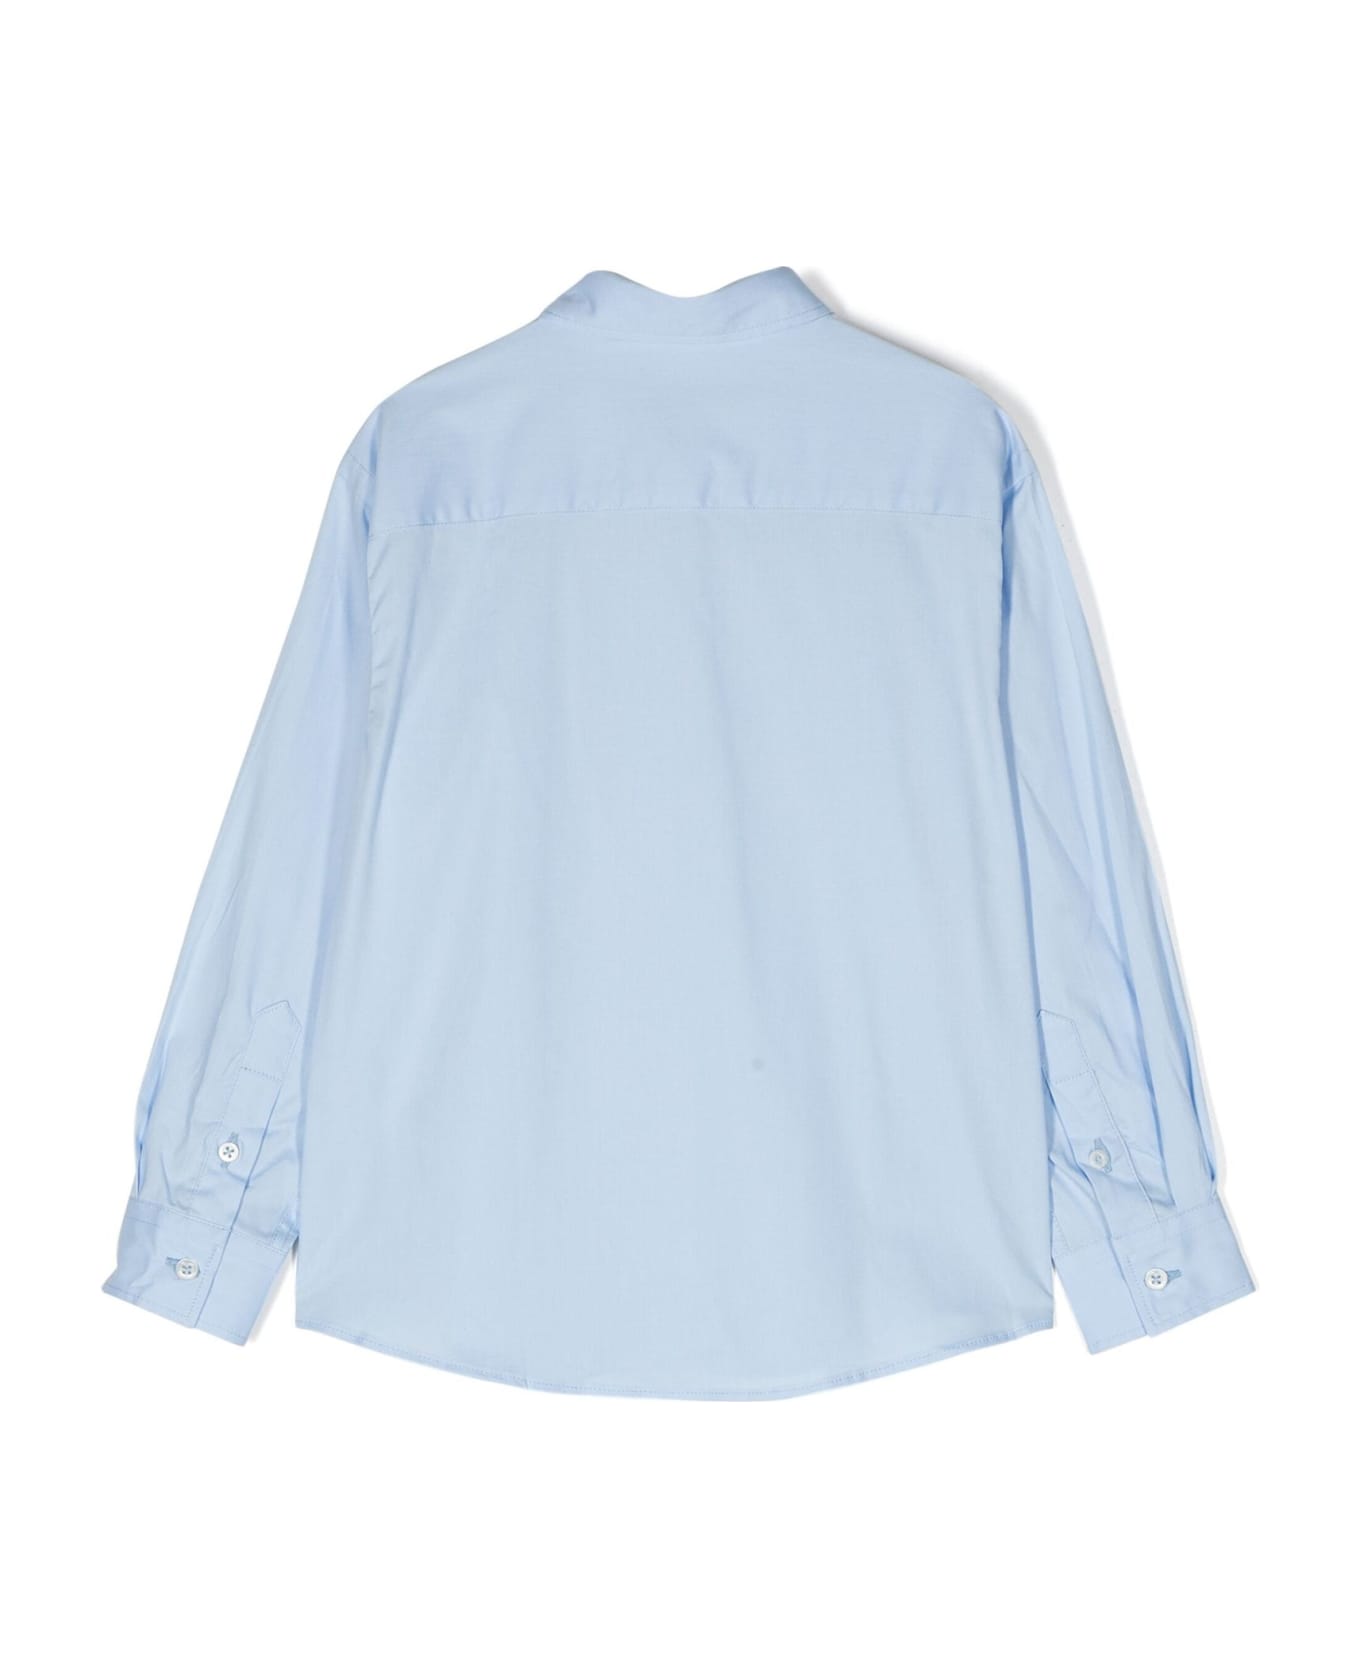 Paolo Pecora Light-blue Cotton Shirt - Azzurro